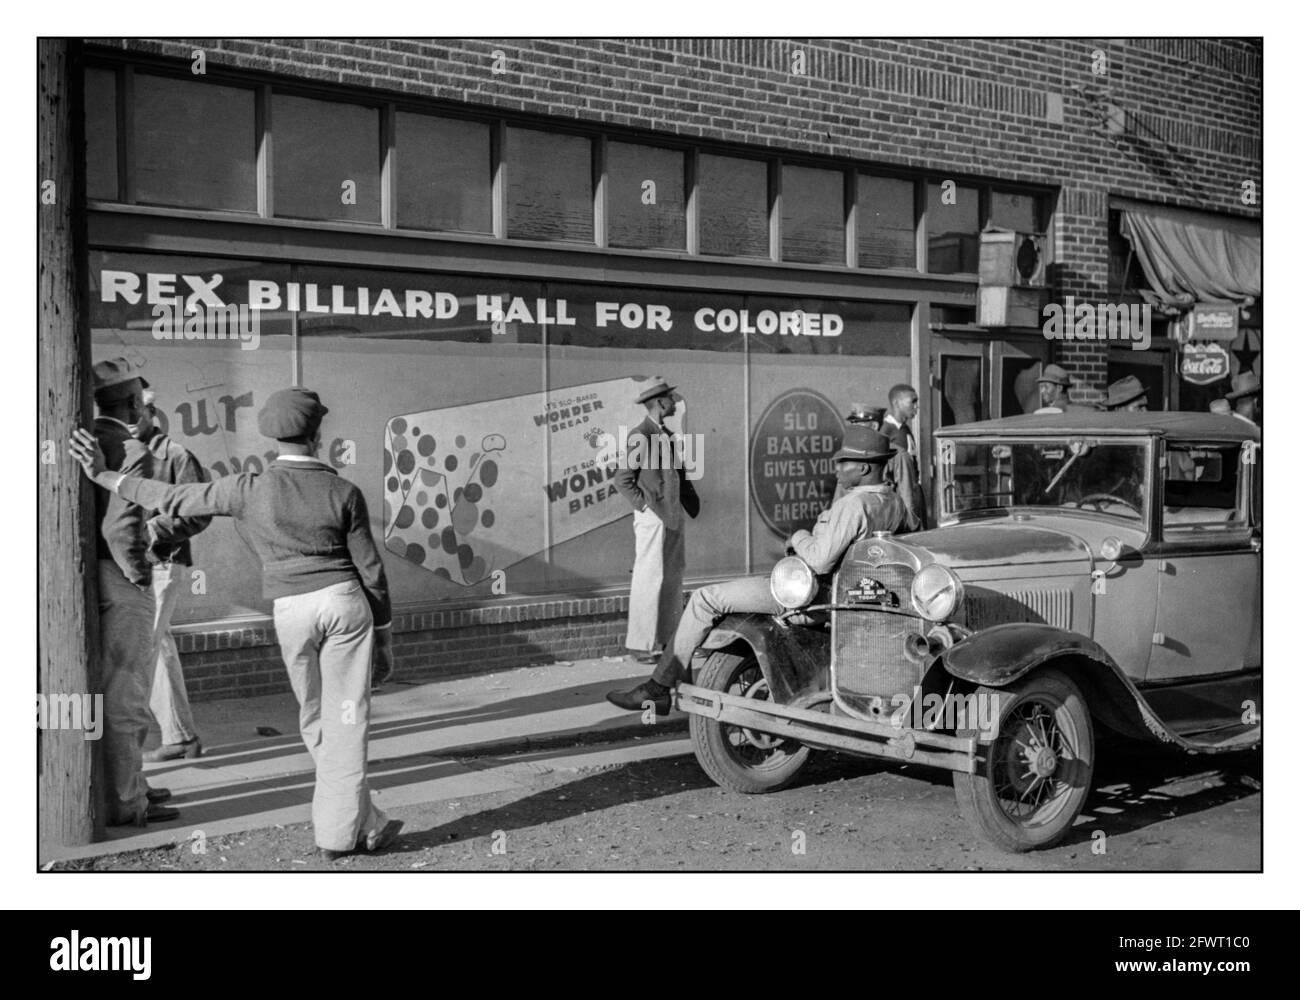 Rassentrennung USA BEALE STREET 1939 ‘Rex Billiard Hall for Colored Only’ Bar Juke Gemeinsame Rassentrennung durch Rasse rassistische Bürgerrechte Apartheid-Trennung durch Farbe. Eine Gruppe afroamerikanischer junger Männer, die draußen vor einer Billardhalle stehen und darauf warten, dass sie geöffnet wird. Beale Street in Memphis, Tennessee. Foto von Marion Post Wolcott, c1939. Stockfoto